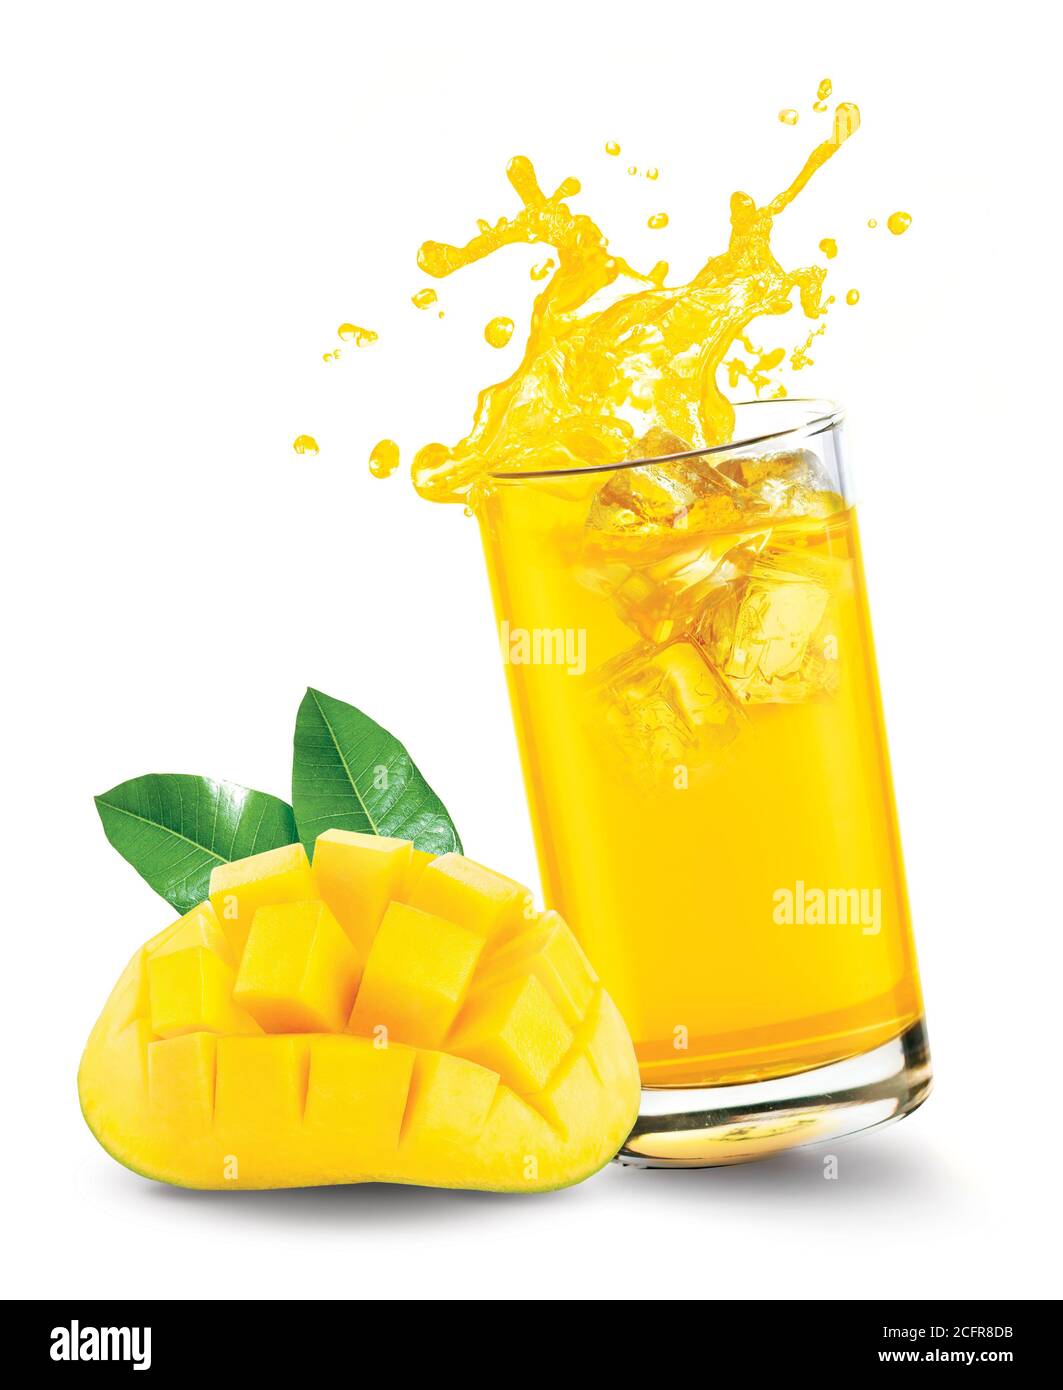 Glass of splashing mango juice with mango fruit on white background Stock Photo